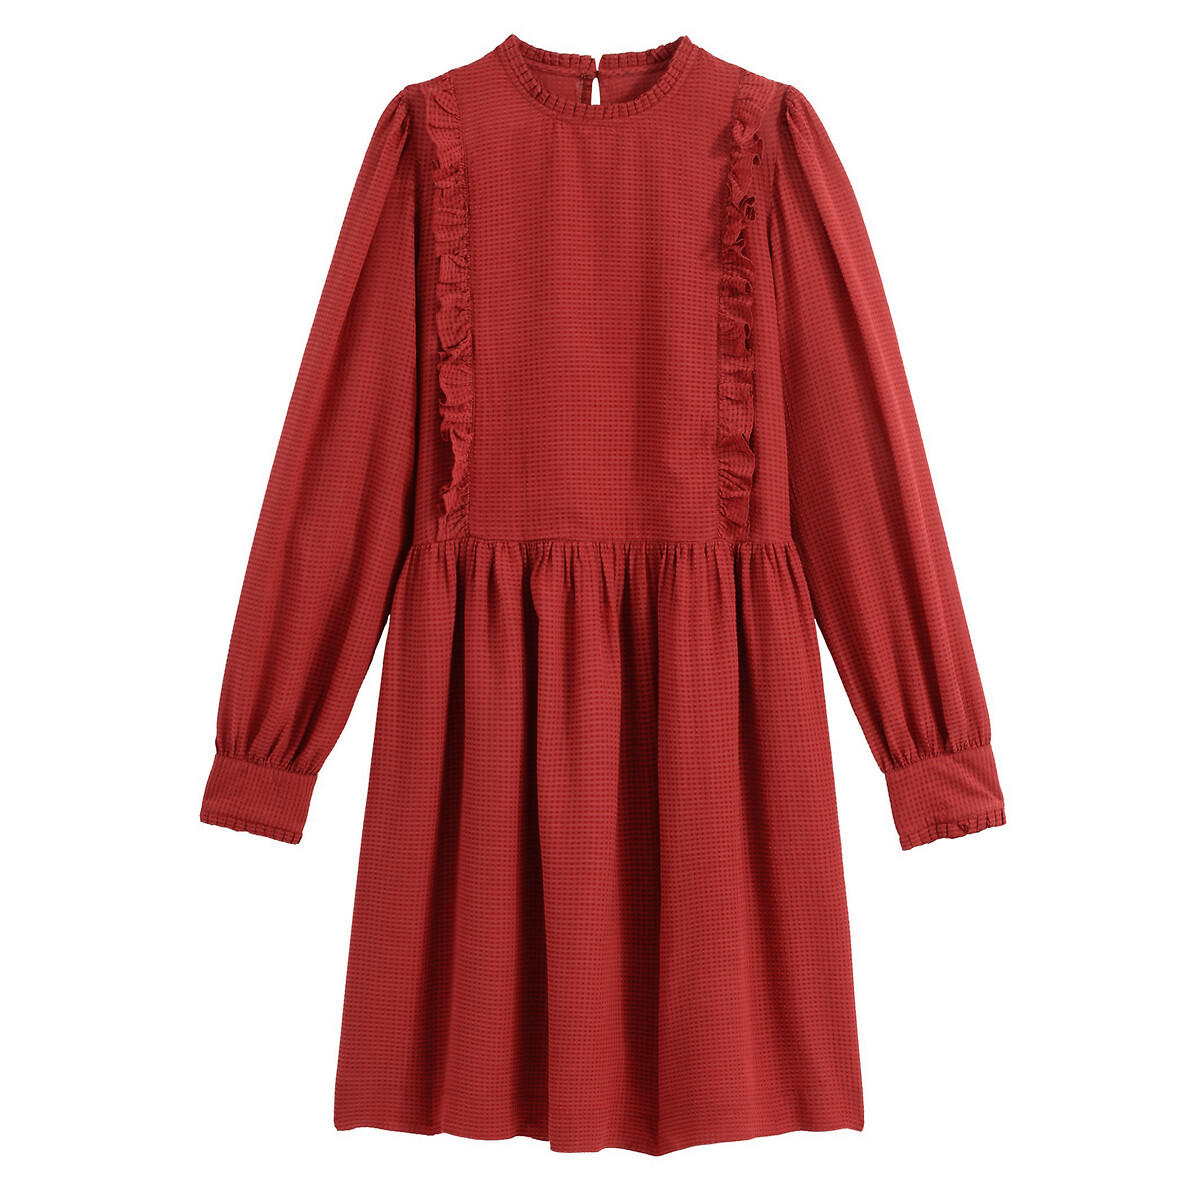 Платье La Redoute Расклешенное короткое с отделкой воланами 42 (FR) - 48 (RUS) красный, размер 42 (FR) - 48 (RUS) Расклешенное короткое с отделкой воланами 42 (FR) - 48 (RUS) красный - фото 5